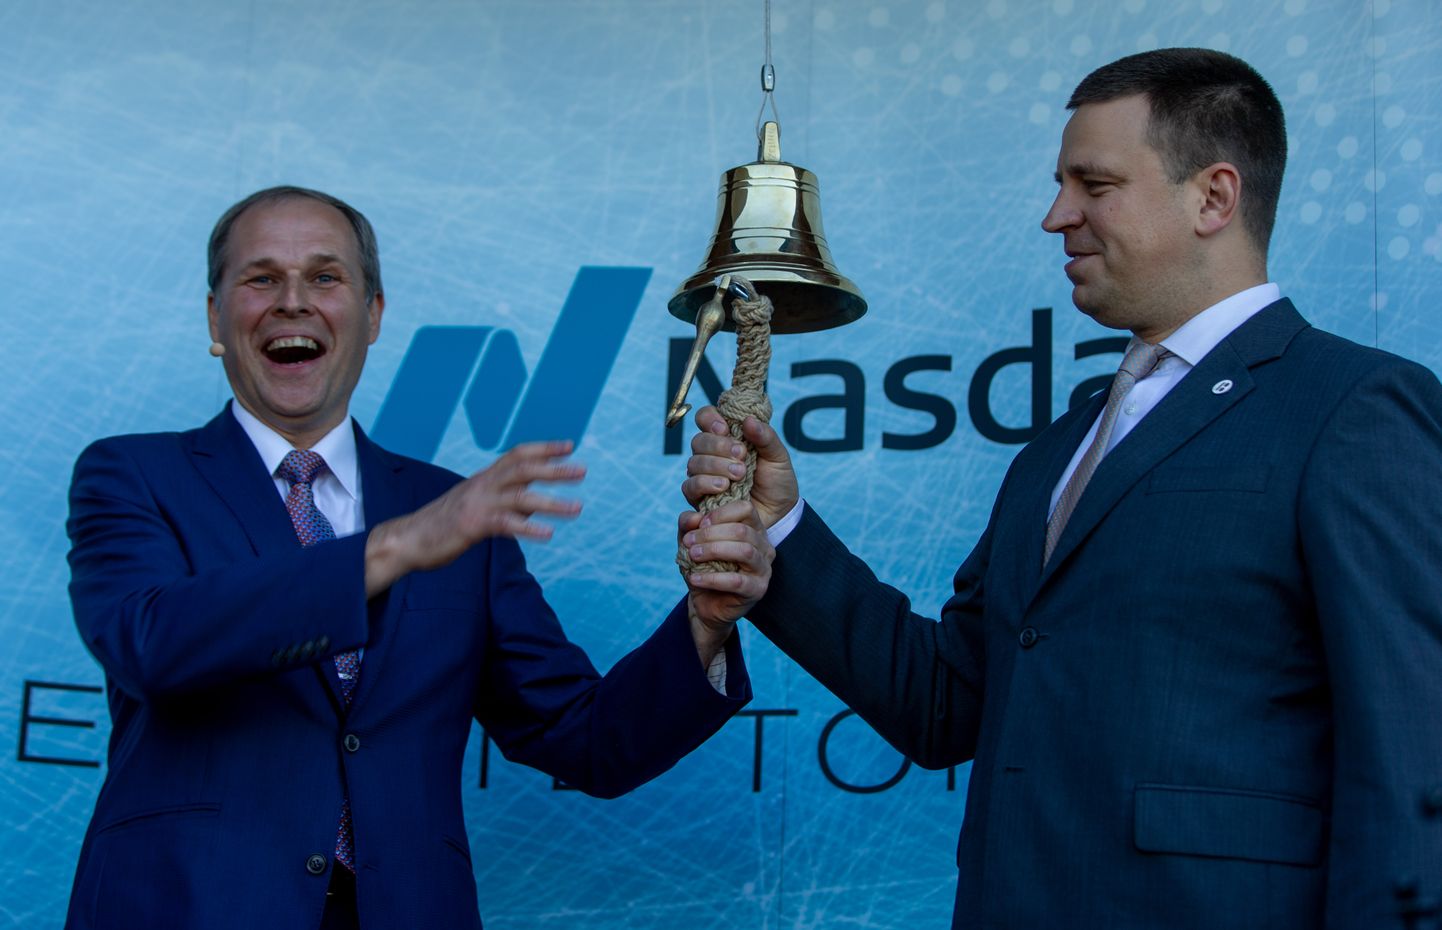 Möödunud aastal läks Tallinna Sadam ka börsile. Vasakul Tallinna Sadama juht Valdo Kalm ja paremal peaminister Jüri Ratas.